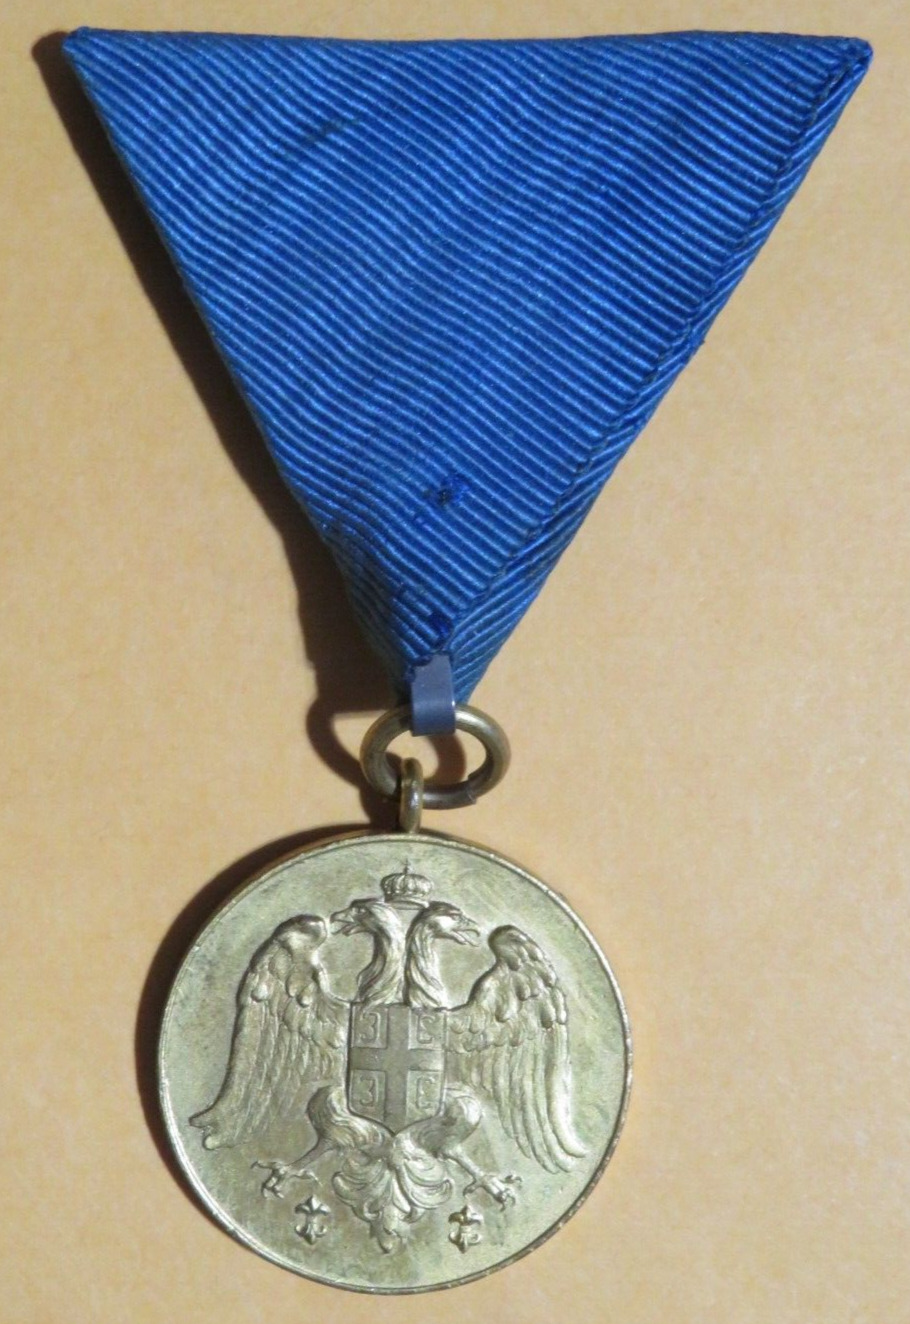 Serbian Zeal Medal Gold Class 1913